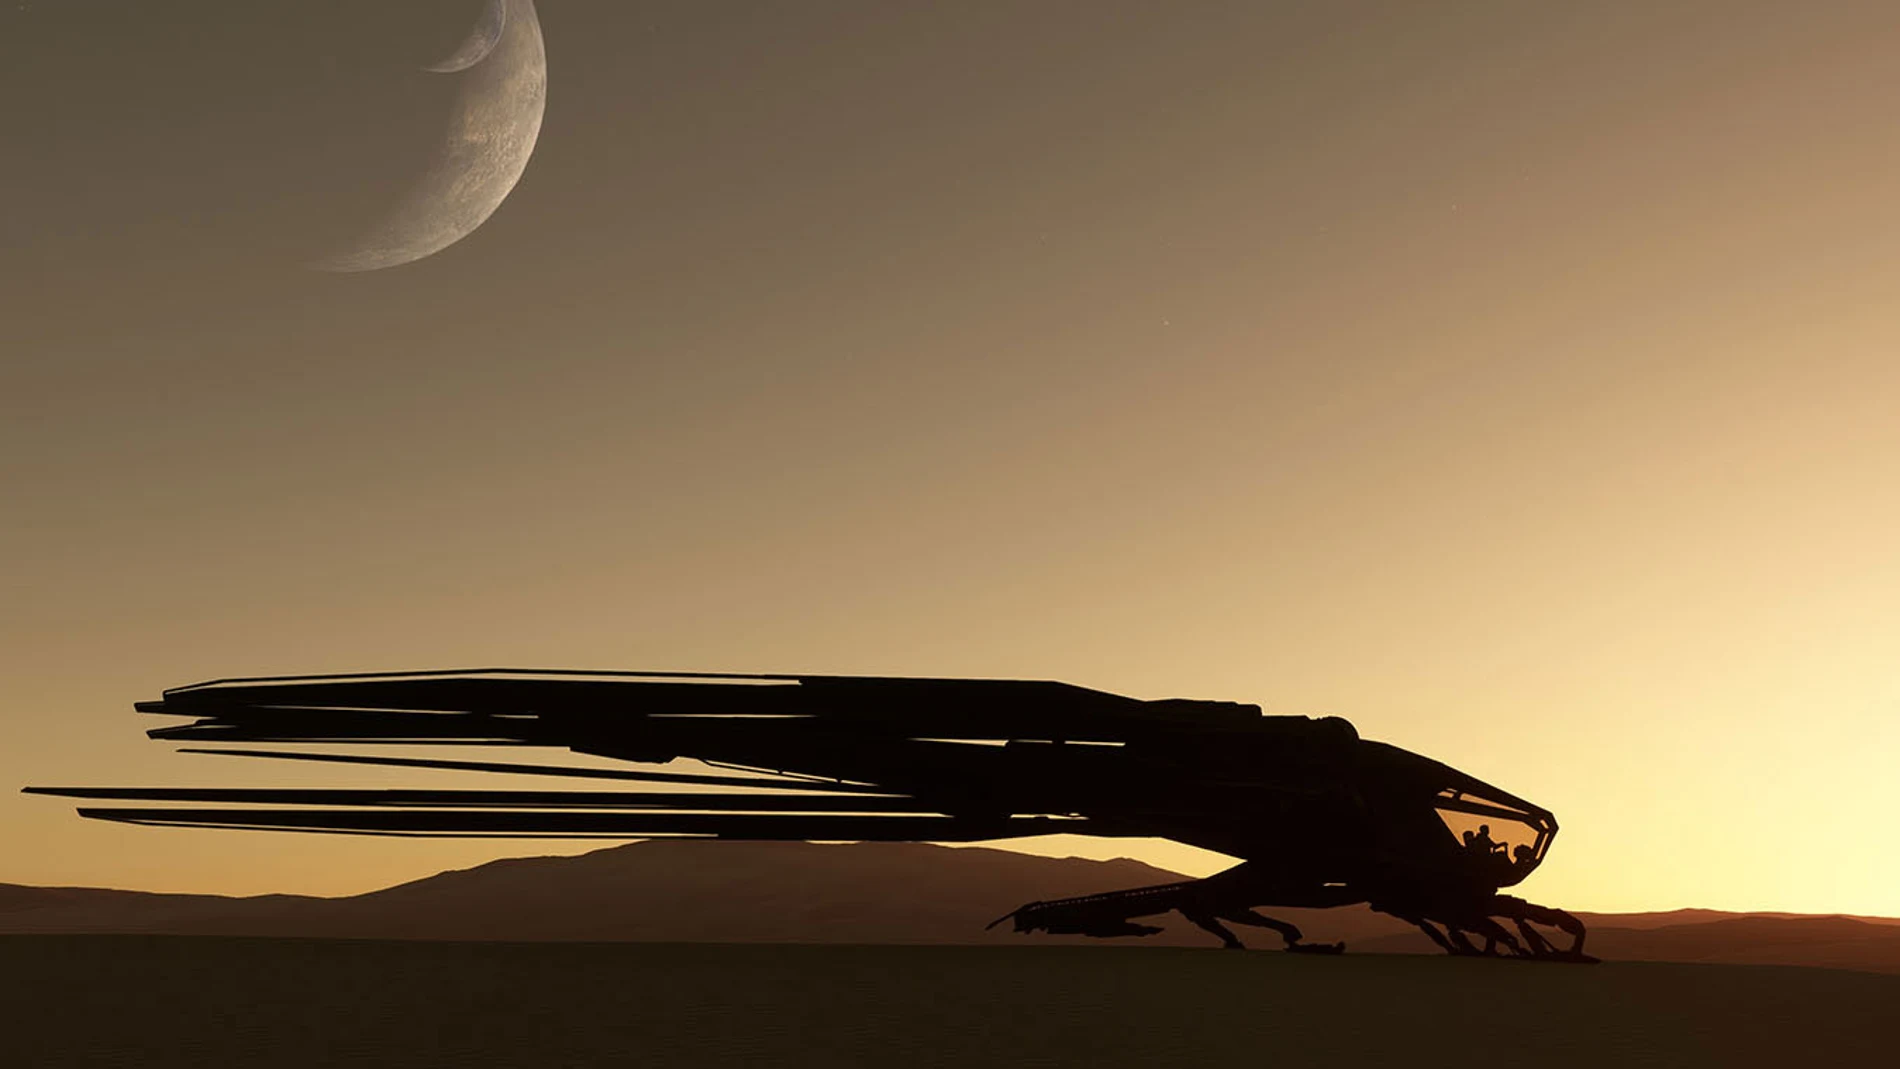 Microsoft Flight Simulator te permite pilotar el Ornitóptero de las películas de Dune